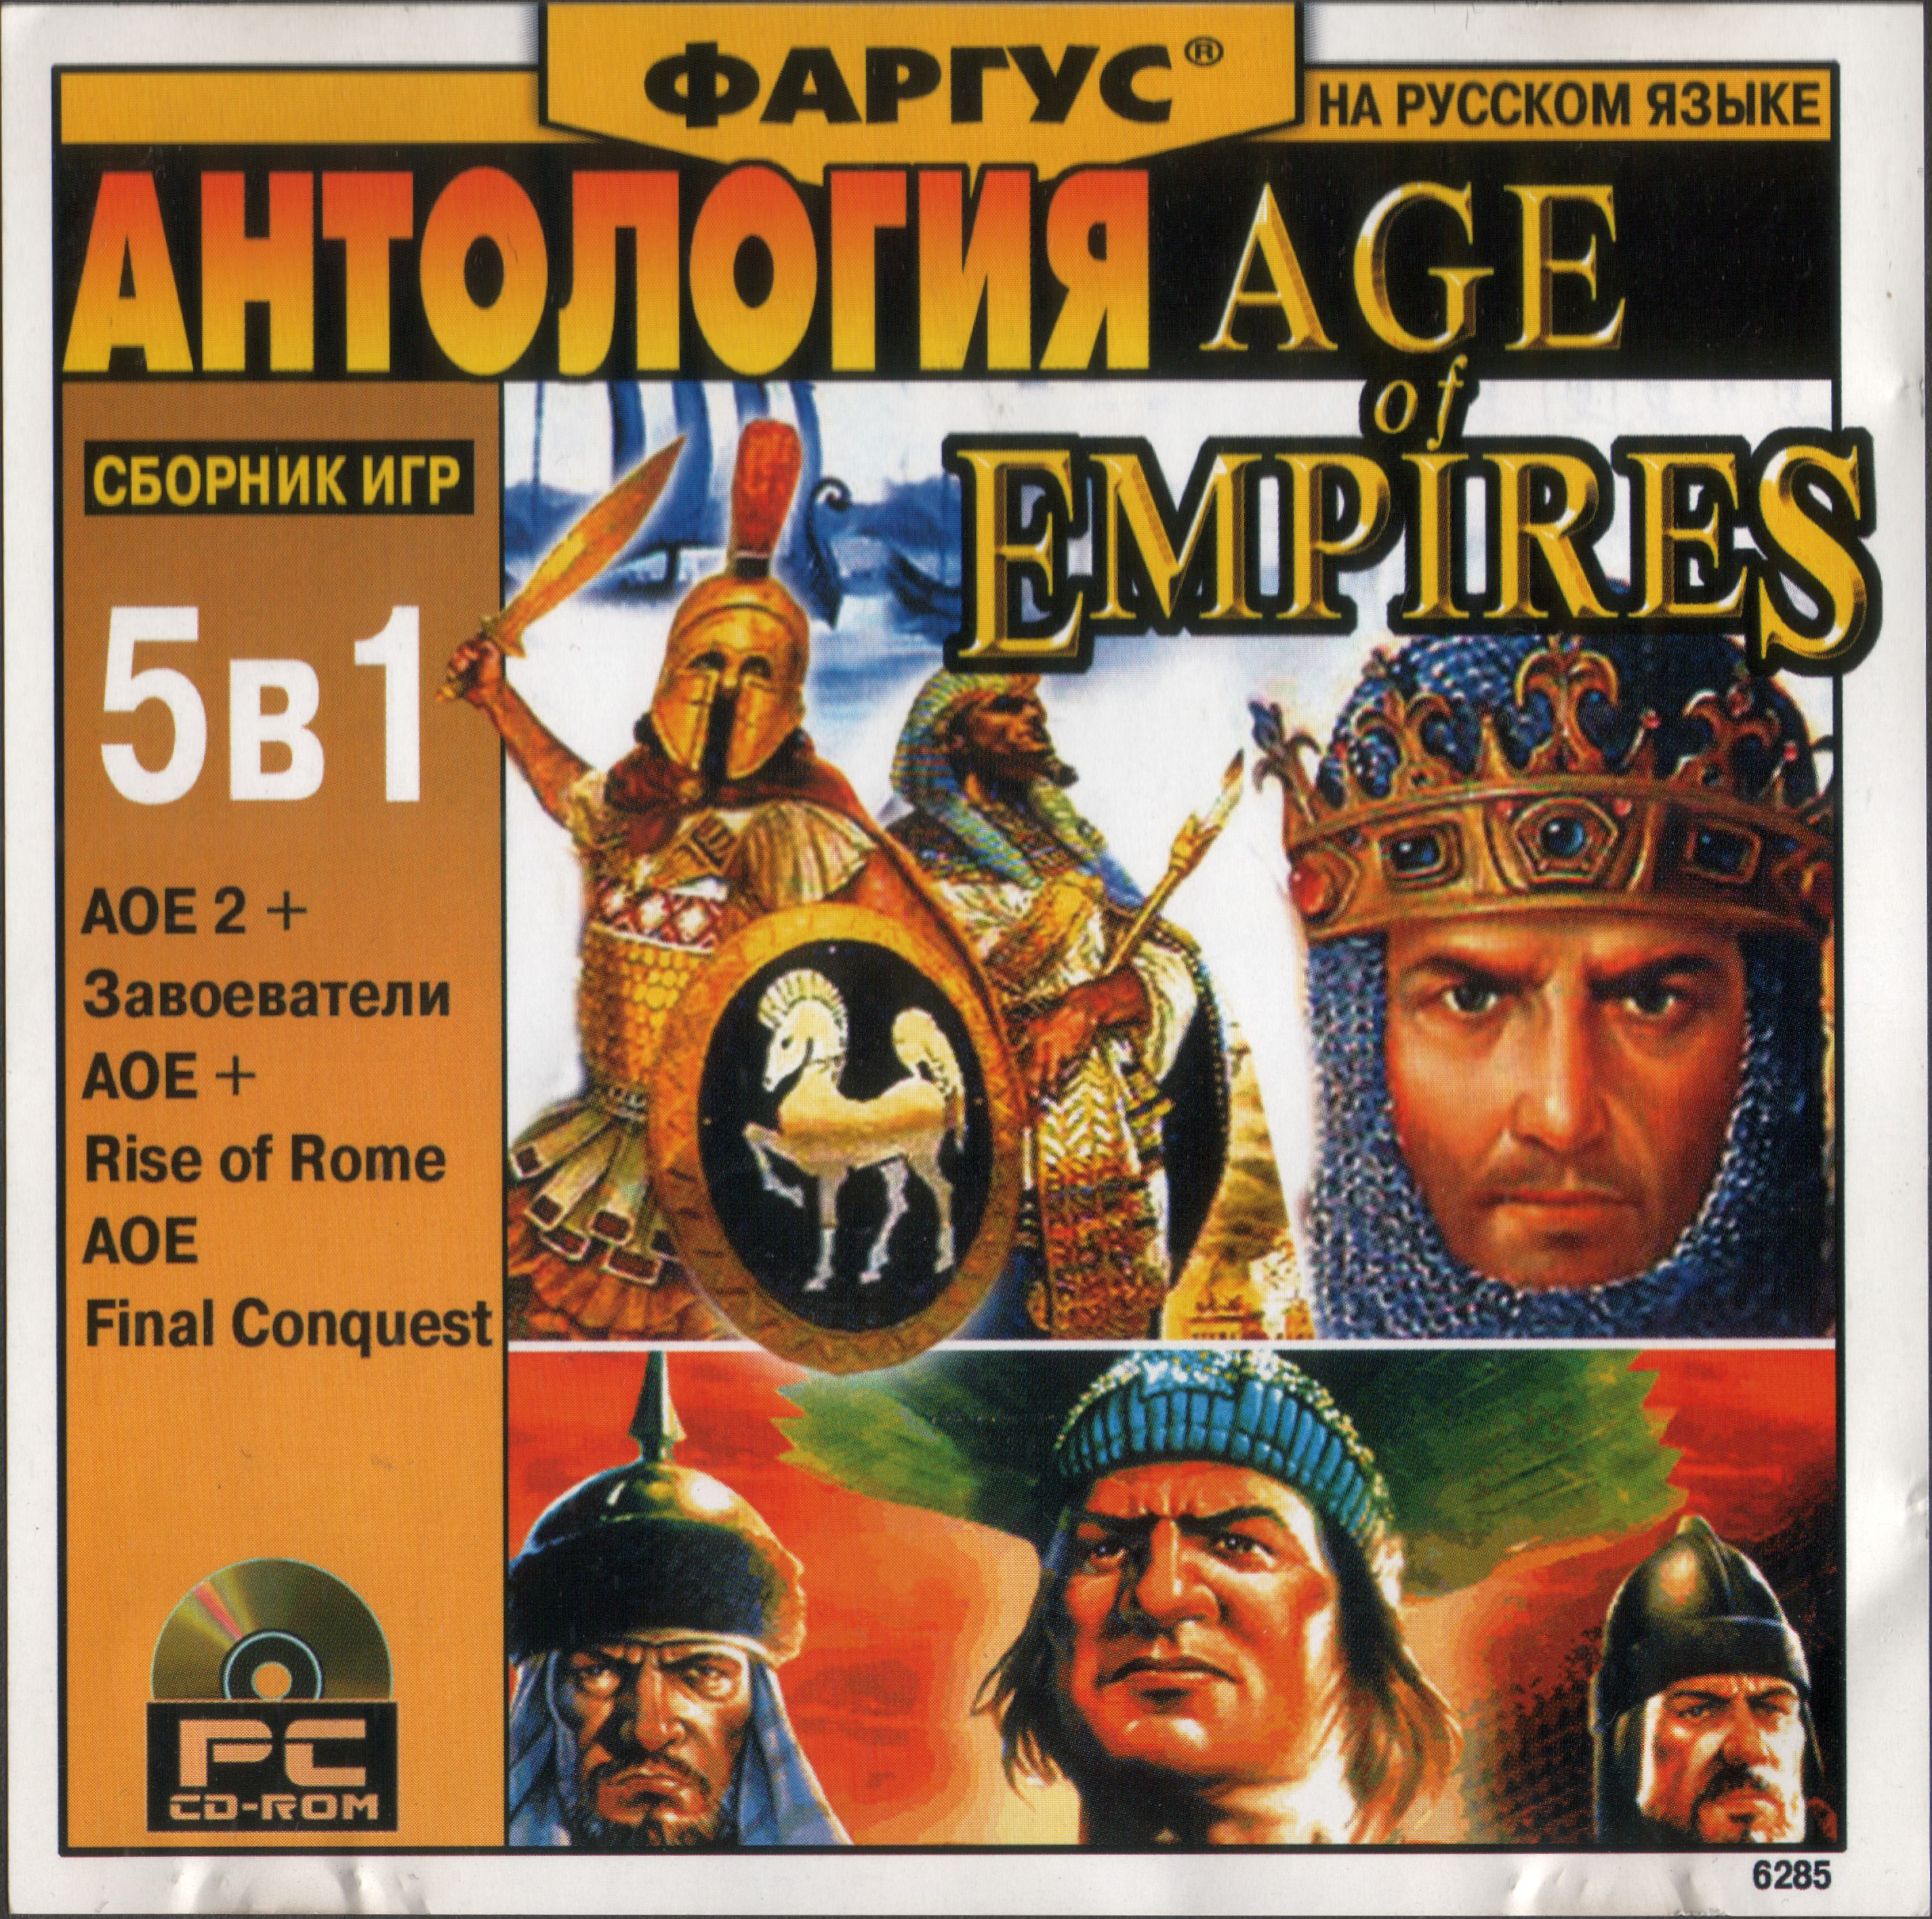 Антология перевод. Age of Empires Фаргус. Age of Empires 2 диск. Антология Фаргус. Сборник игр 2000.